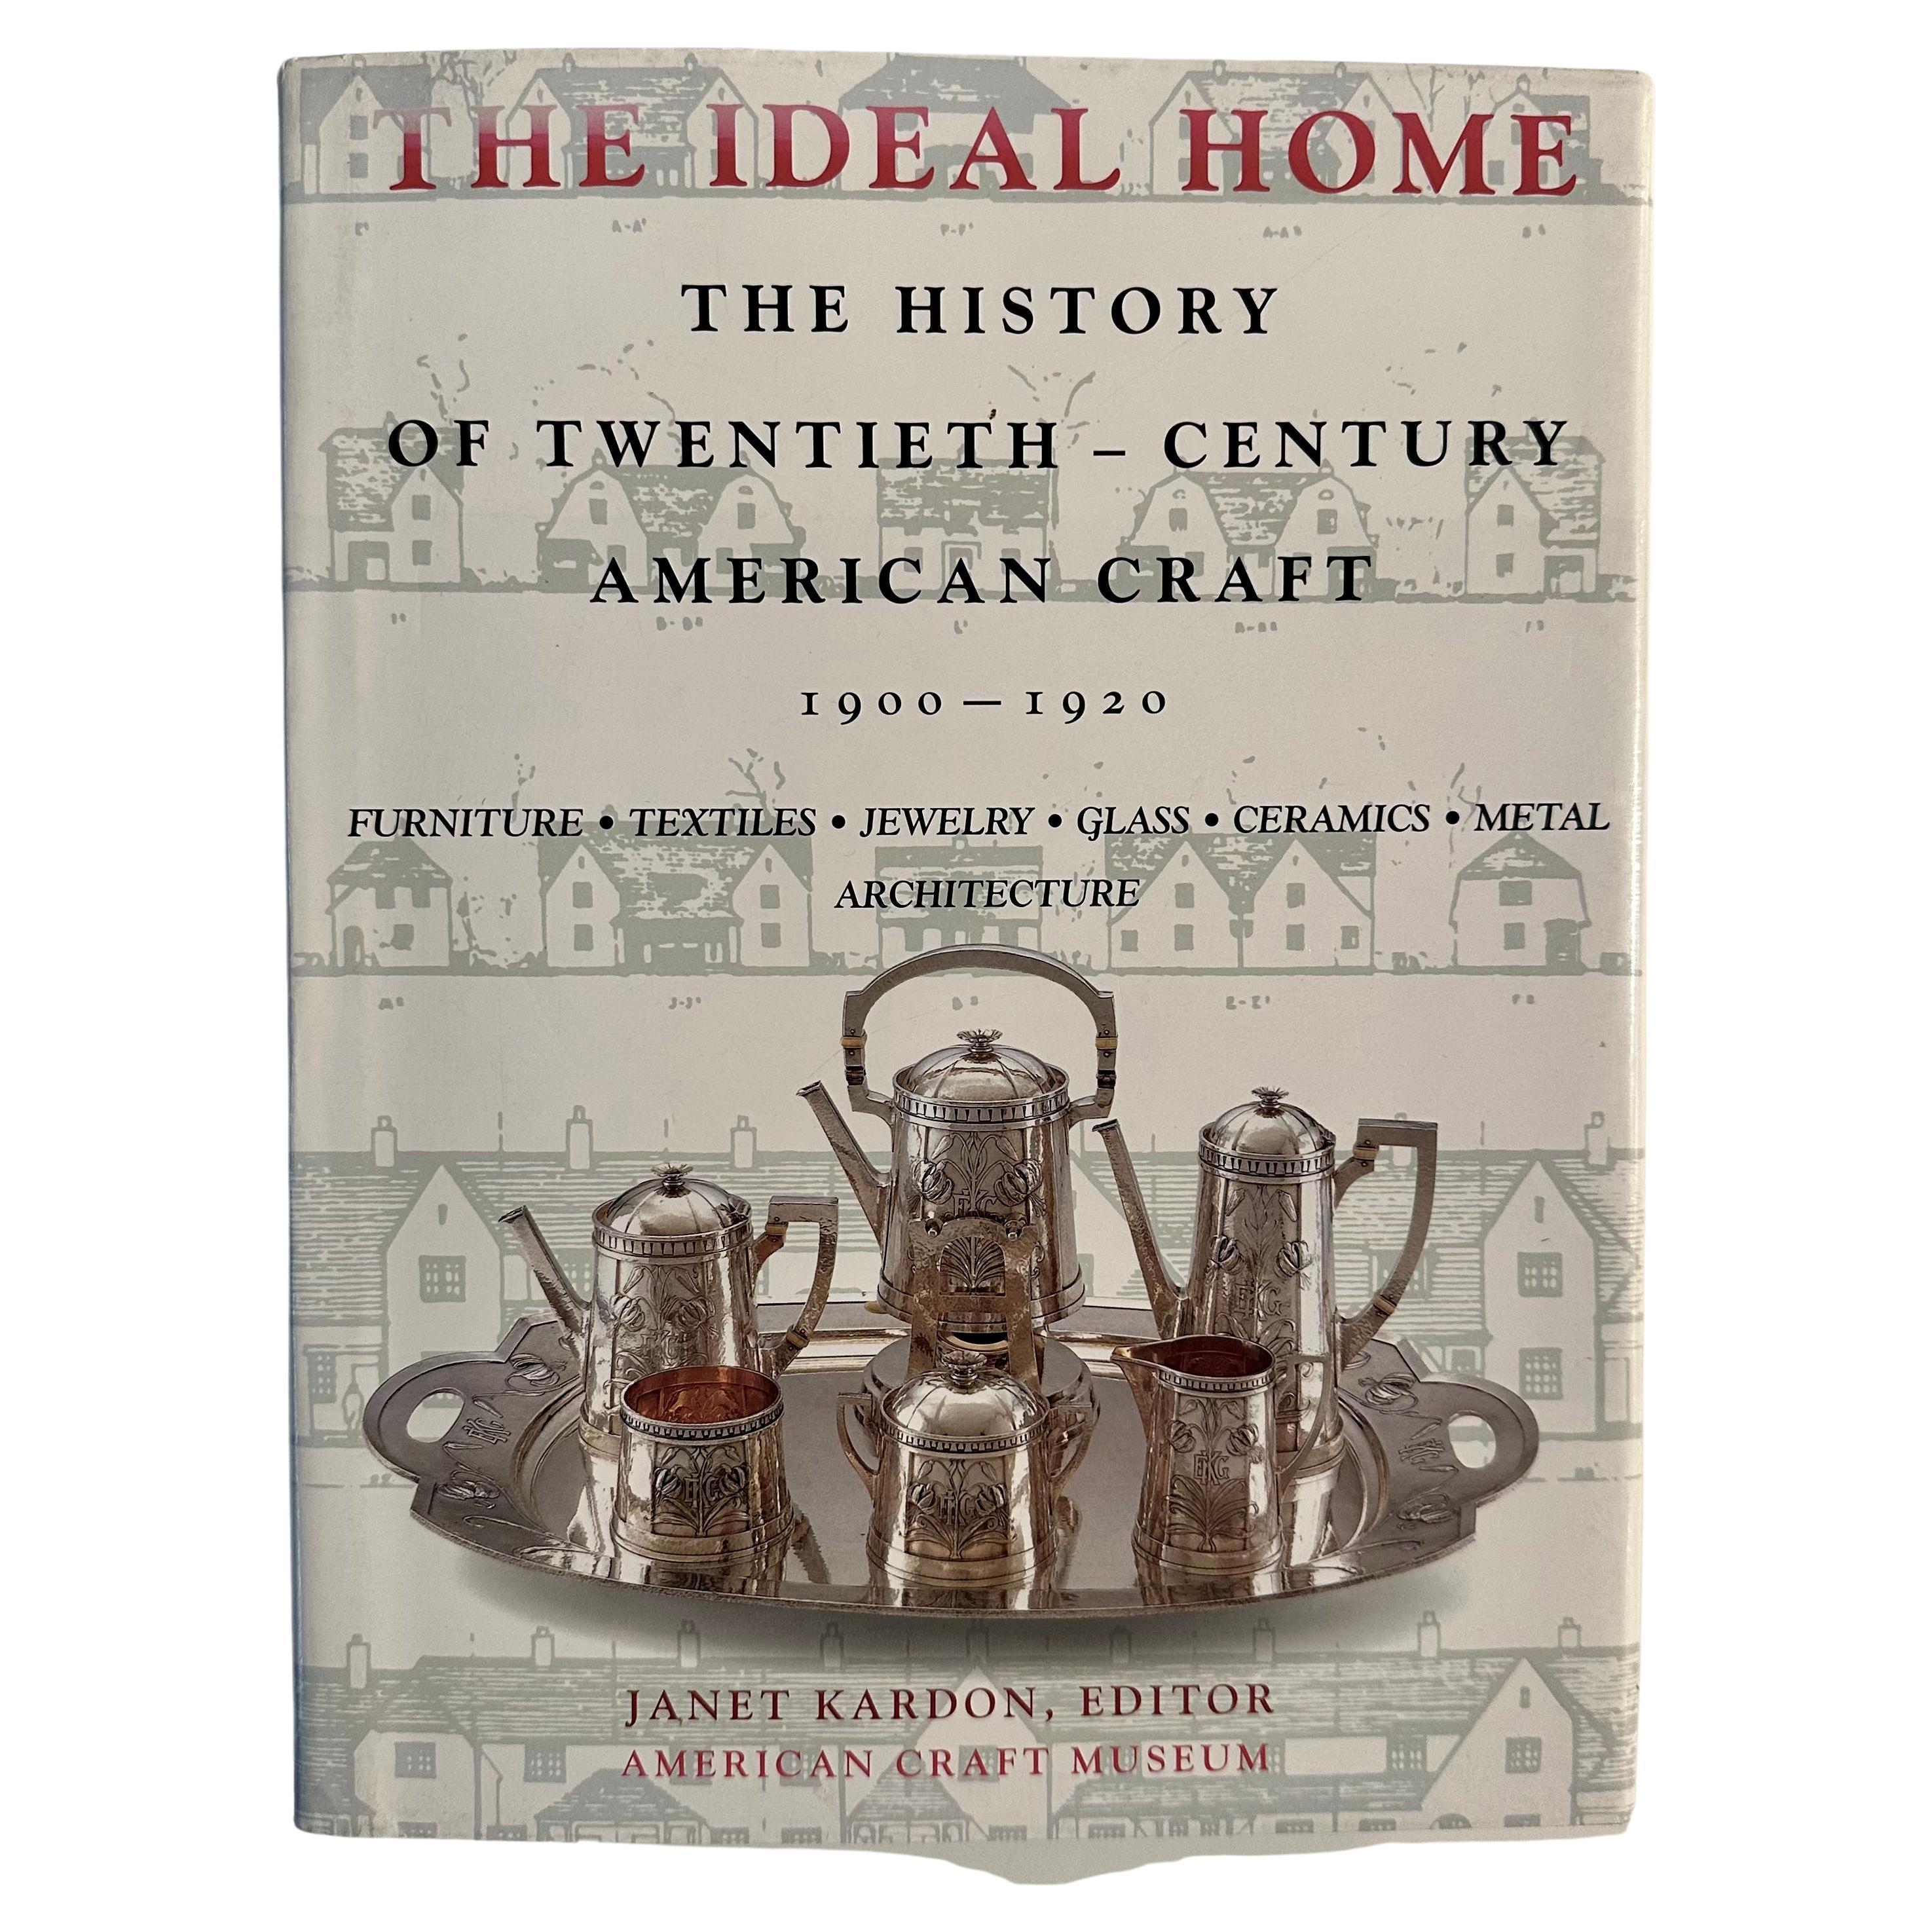 The Ideal Home - The History of Twentieth-Century American Craft 1900-1920 (La maison idéale - L'histoire de l'artisanat américain du XXe siècle)